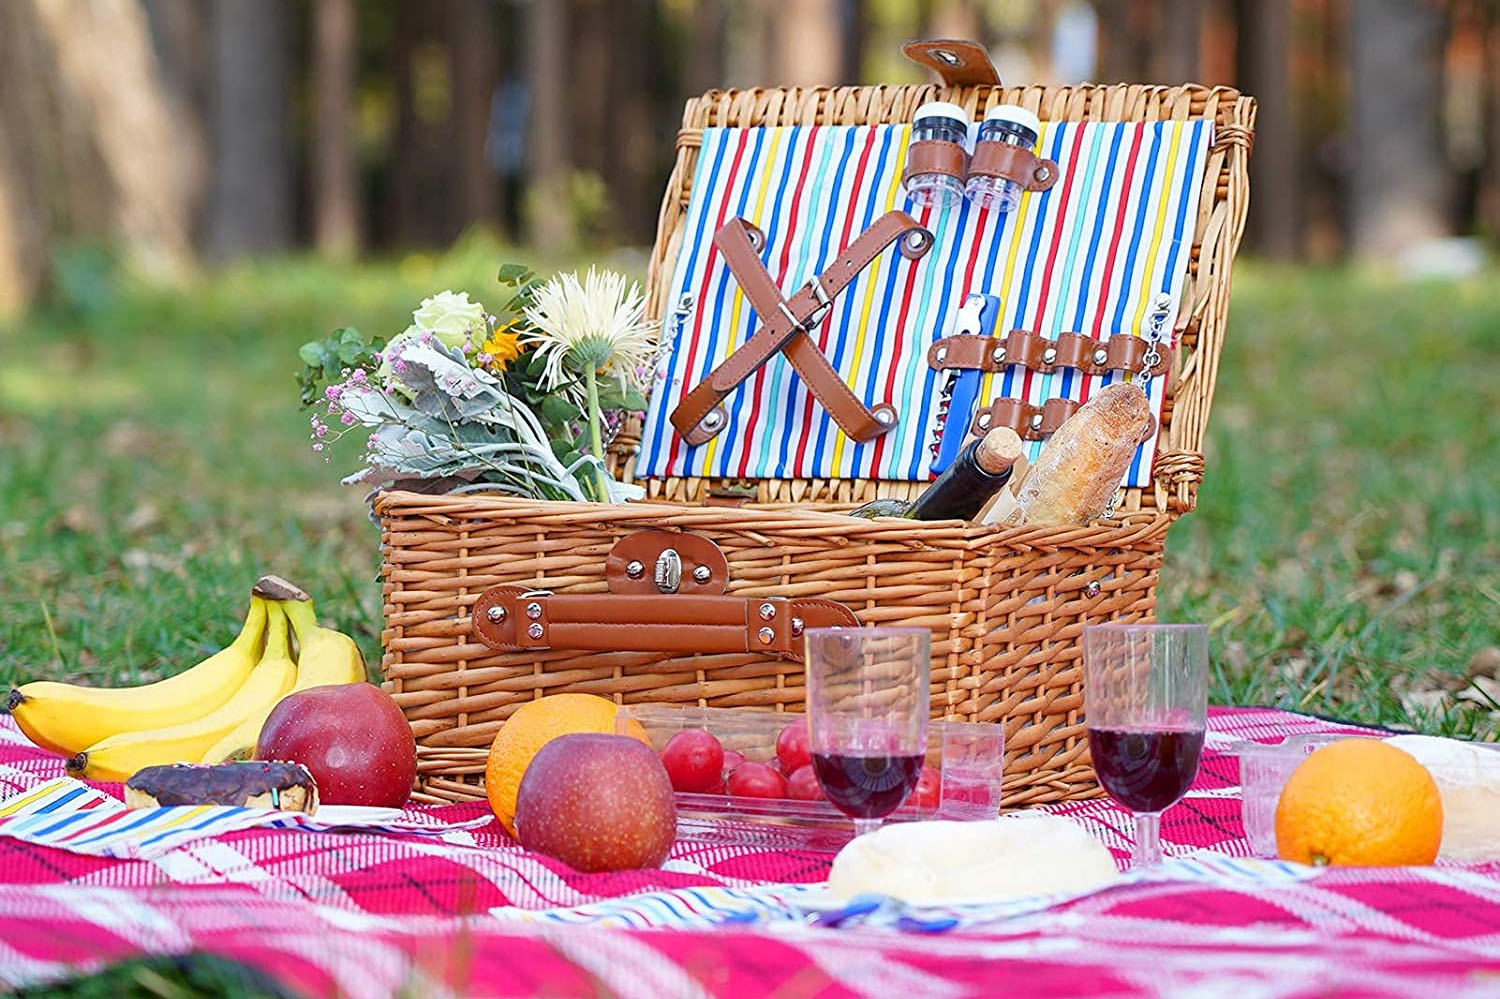 Picknick jeweils jeden Sonntag im Juni, Juli bis zum 28. August